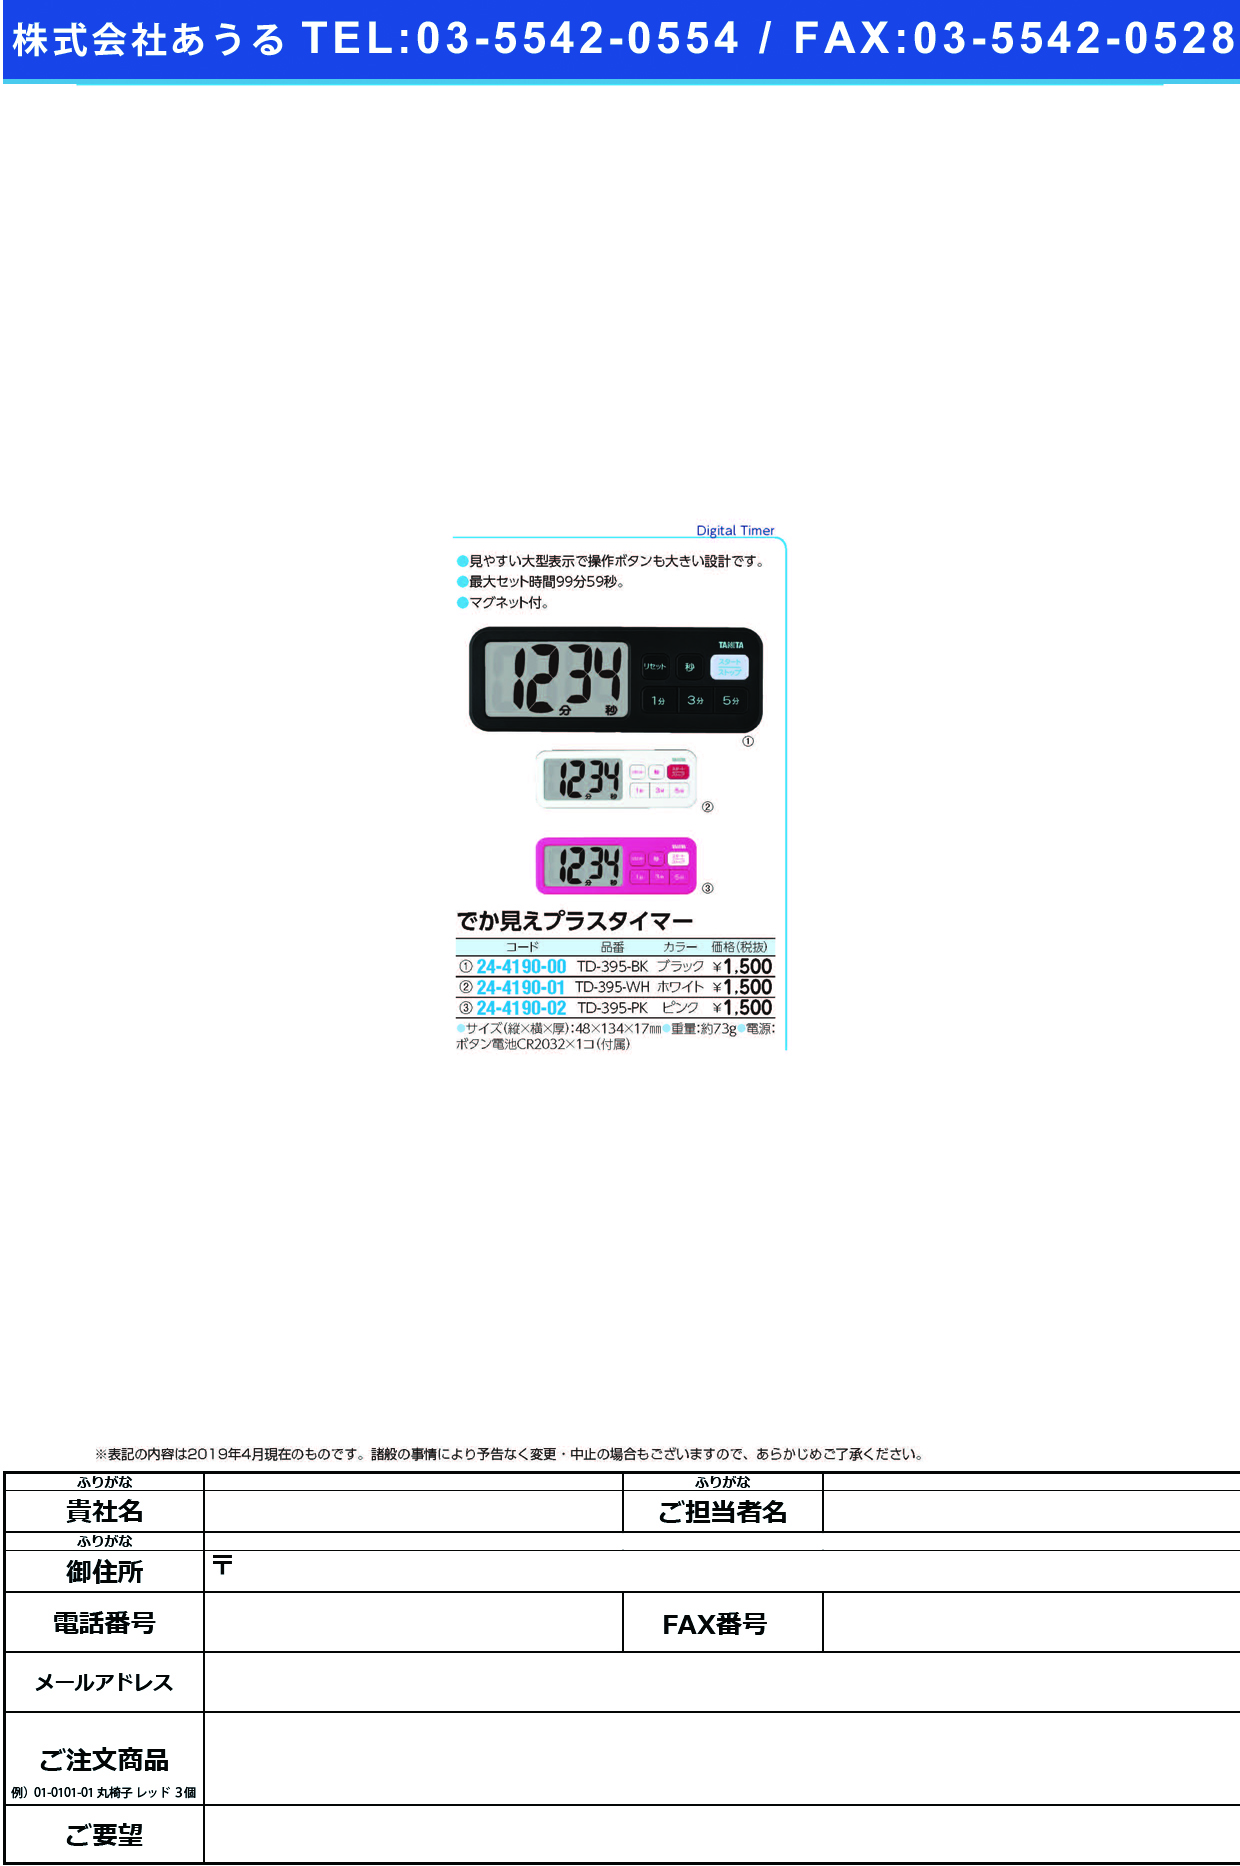 (24-4190-02)デジタルタイマーでか見えプラス TD-395(ﾋﾟﾝｸ) ﾃﾞｼﾞﾀﾙﾀｲﾏｰﾃﾞｶﾐｴﾌﾟﾗｽ(タニタ)【1個単位】【2019年カタログ商品】